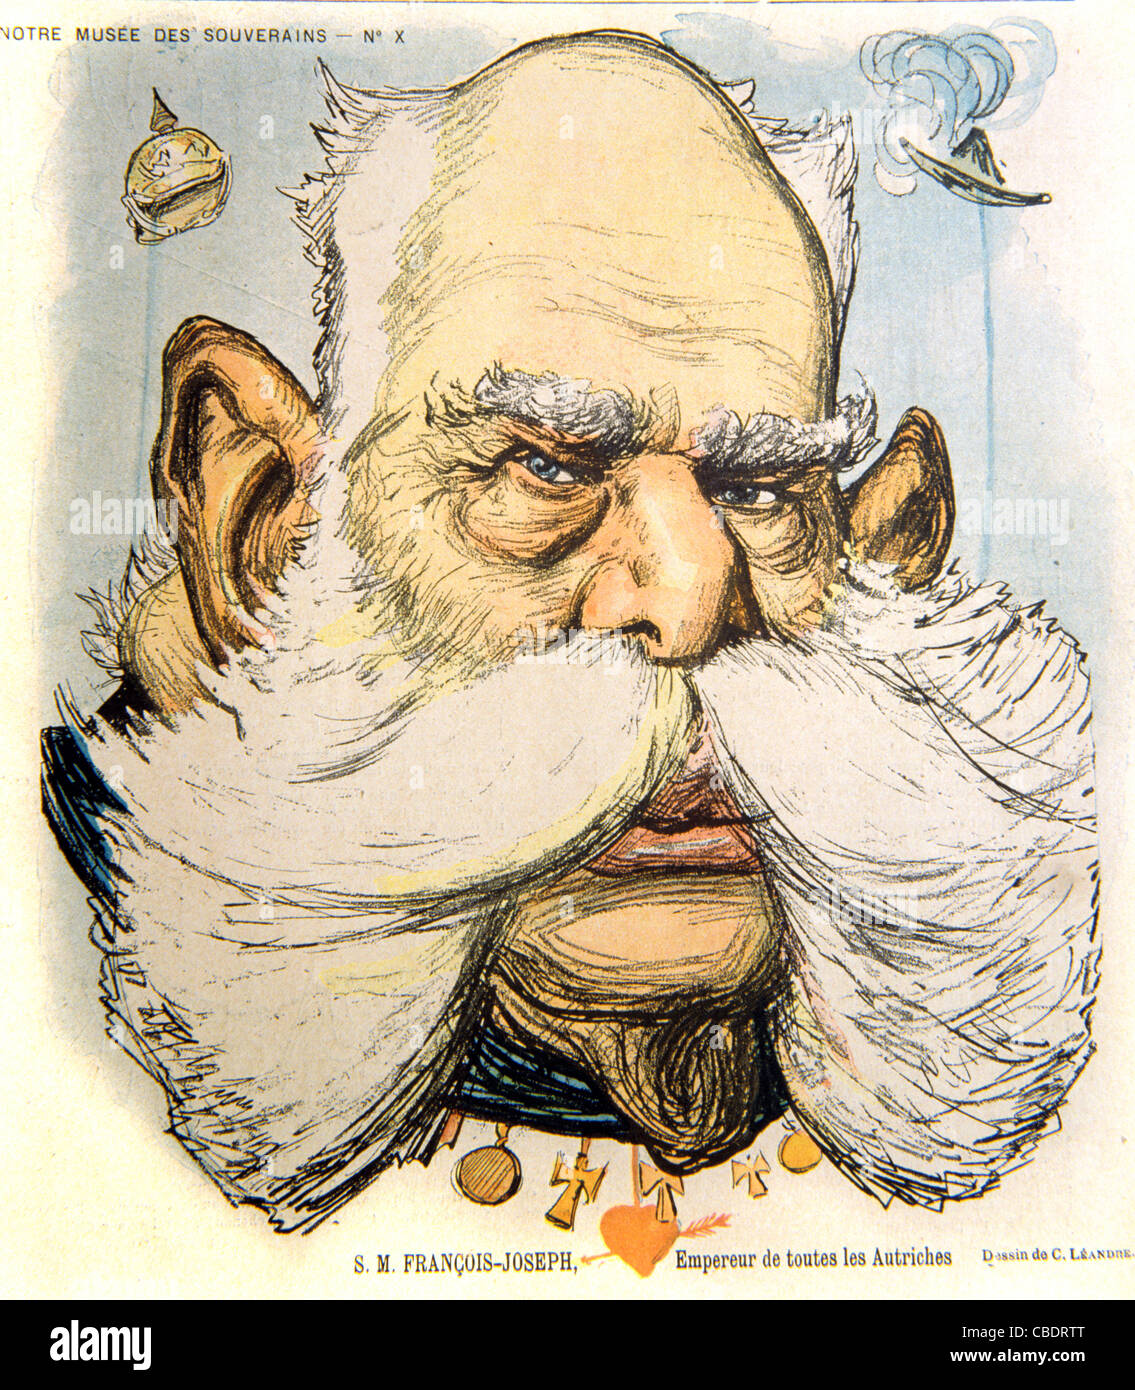 Karikatur oder Porträt von Kaiser Franz oder Franz Joseph I., Kaiser von Österreich mit einem buschigen Schnurrbart, möglicherweise einem Handlebar-Schnurrbart oder Walrus-Schnurrbart. Cover des französischen Satiremagazins 'Le Rire', Oktober 1897 Stockfoto